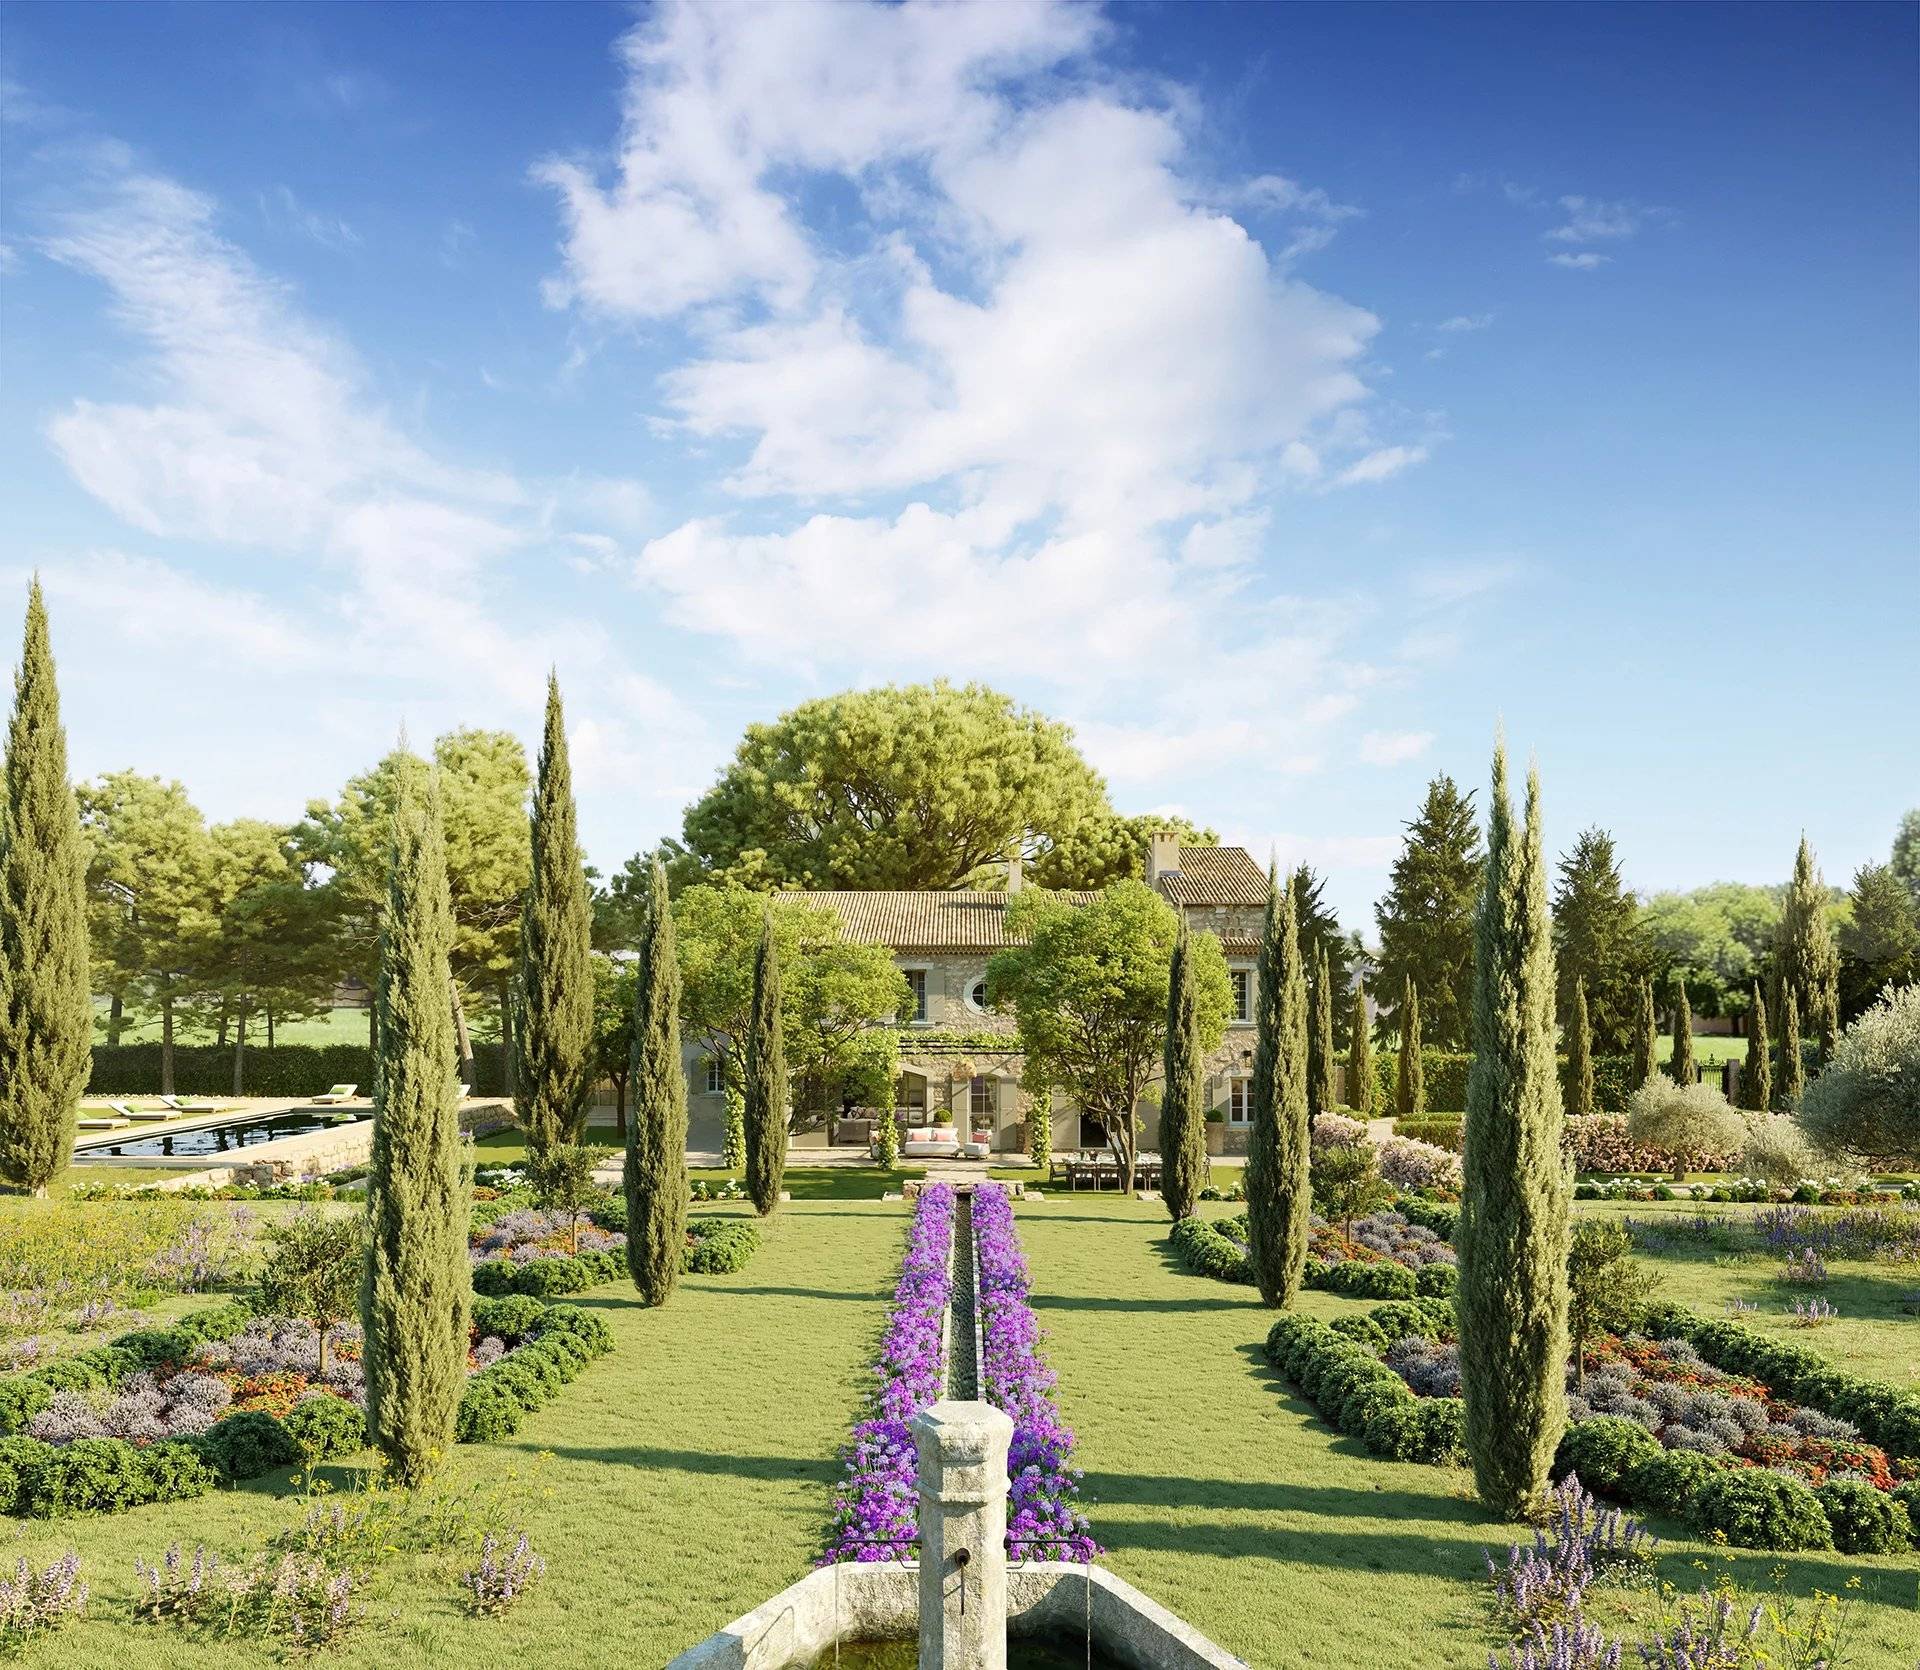 VERKOOP Villa 5 SLPK Paradou / Provence / FRANKRIJK -Provencaalse MAS, terrein van 4 ha.